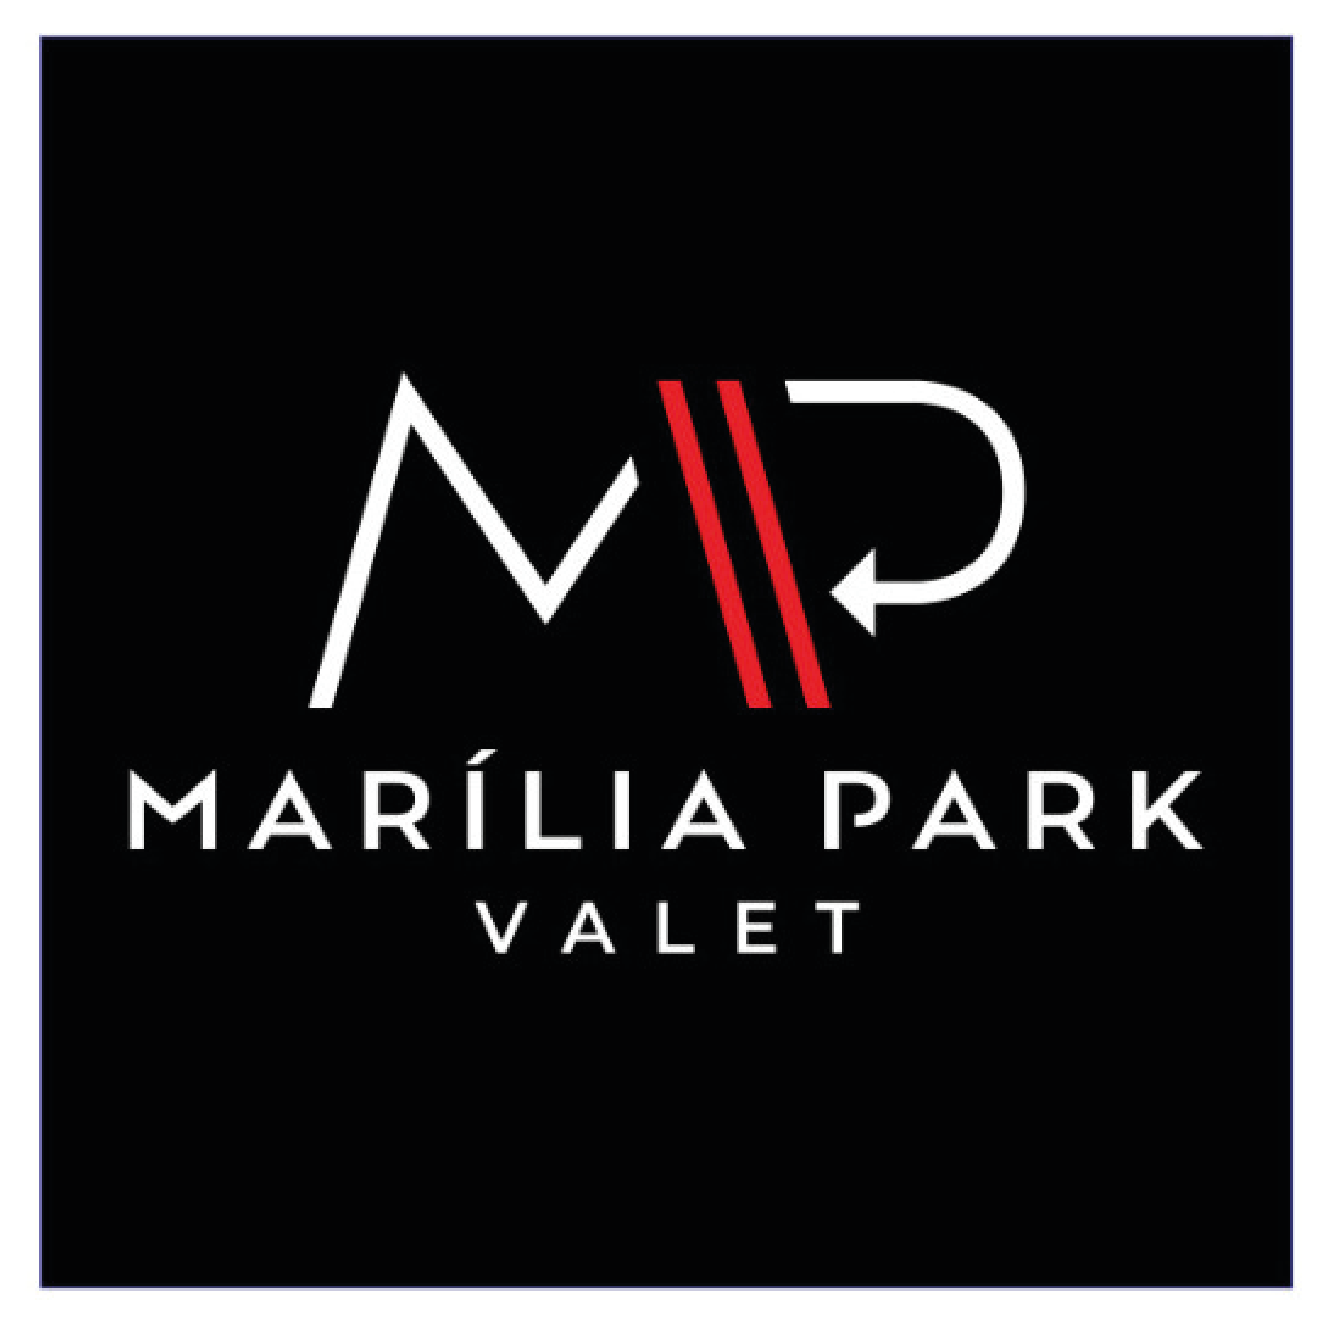 Marilia Park Valet